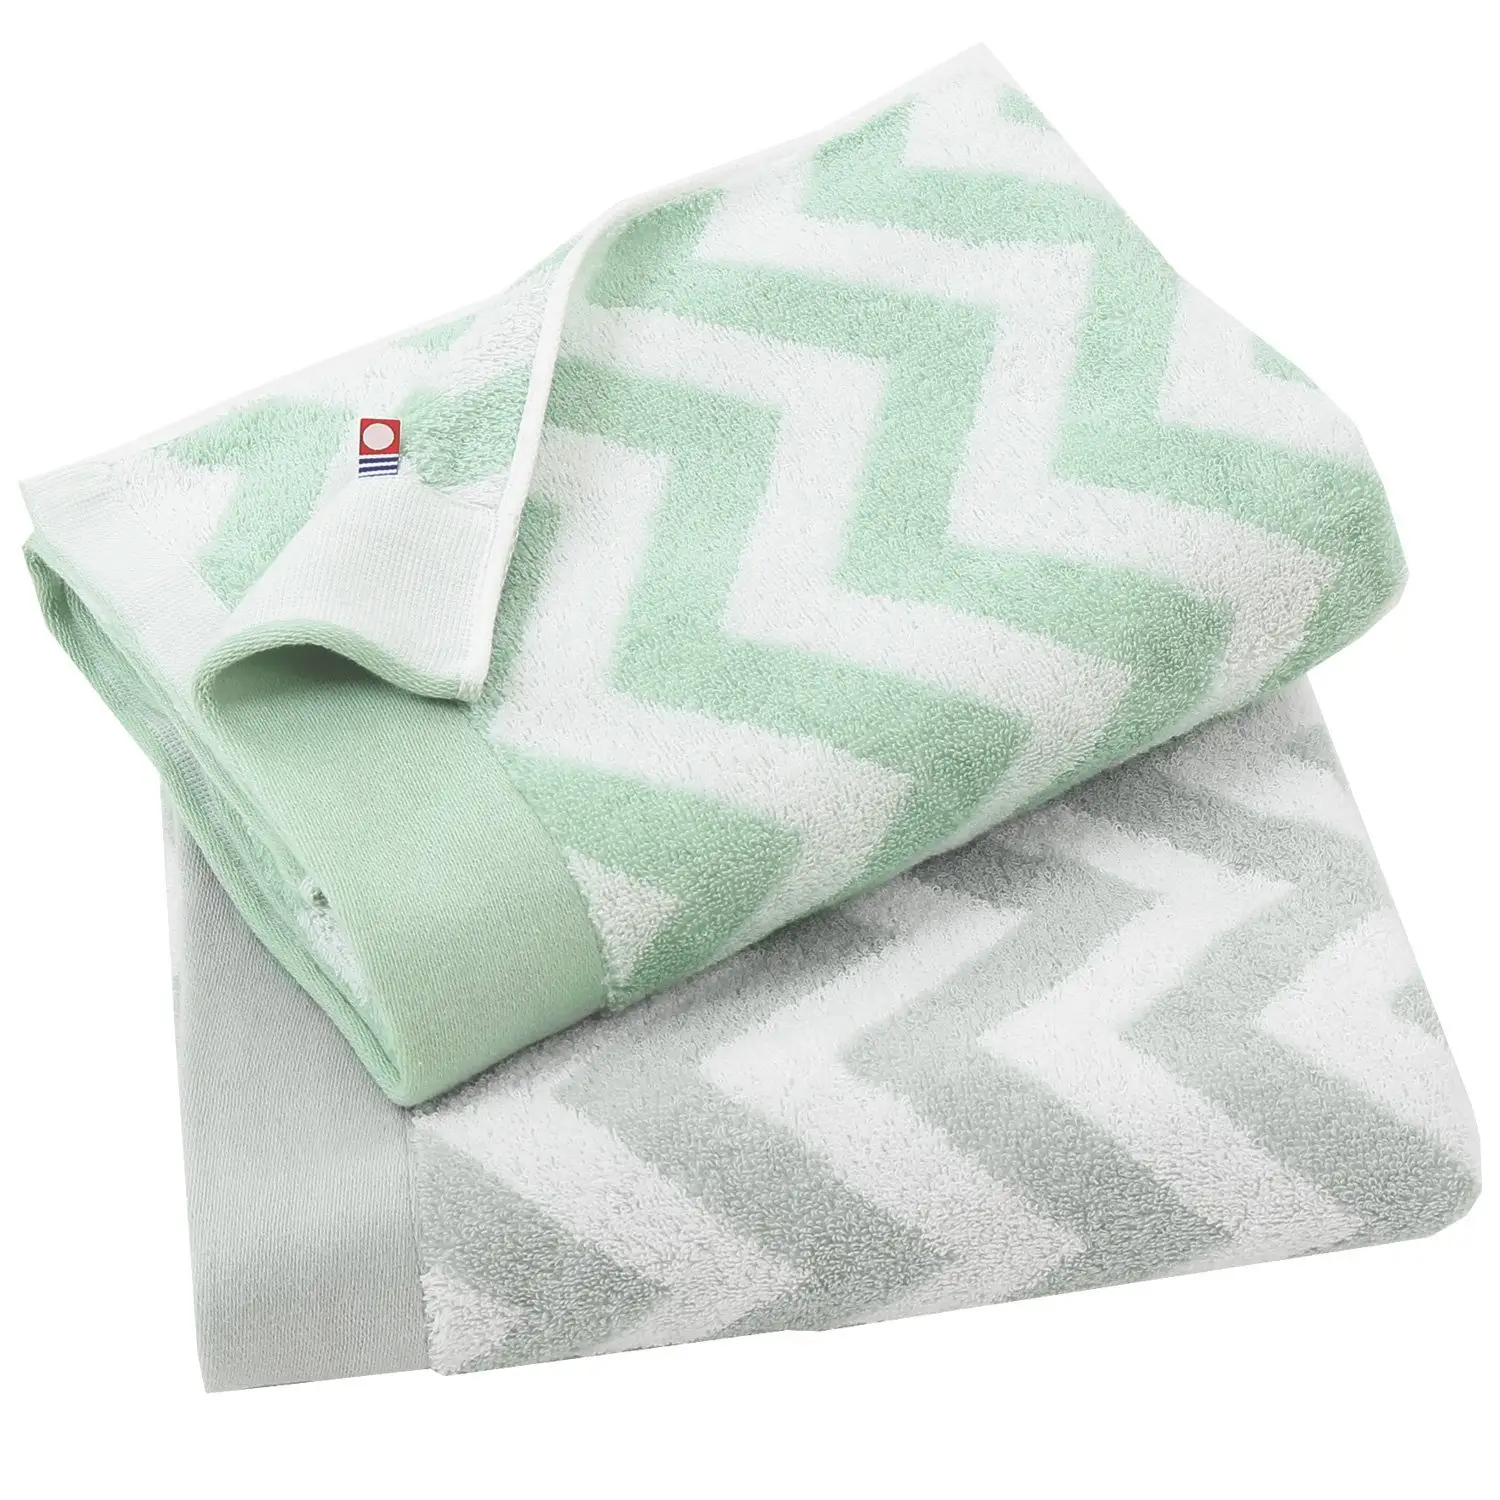 [Wholesale Products] HIORIE Imabari towel Cotton 100% SLOW Bath Towel 60*120cm 272g 400GSM Nordic Design Chevron Wave Towel Set